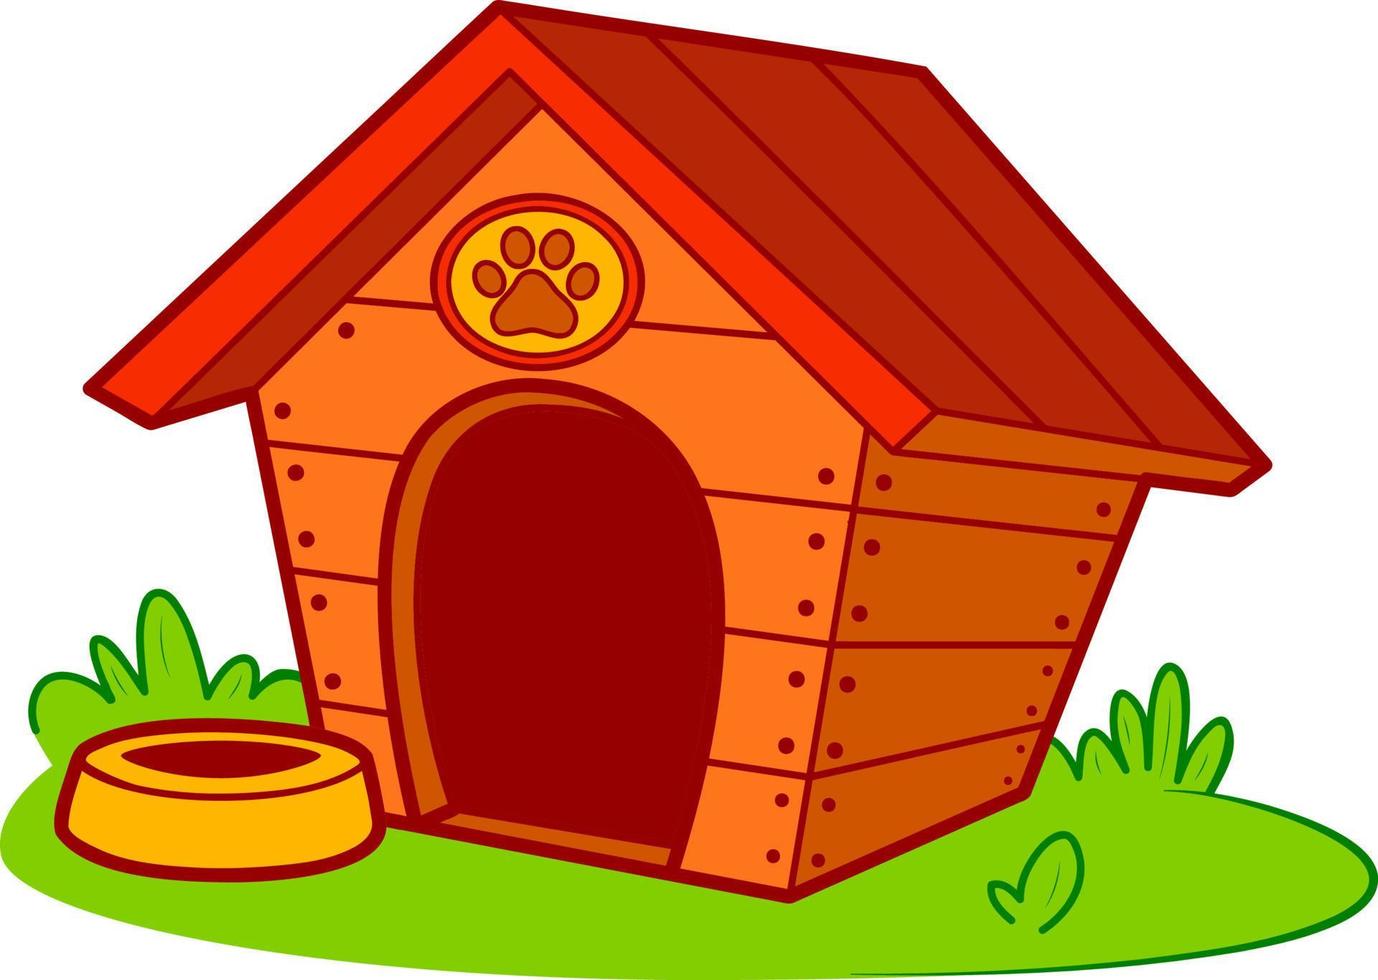 Cute doghouse cartoon. Dog house clipart vector